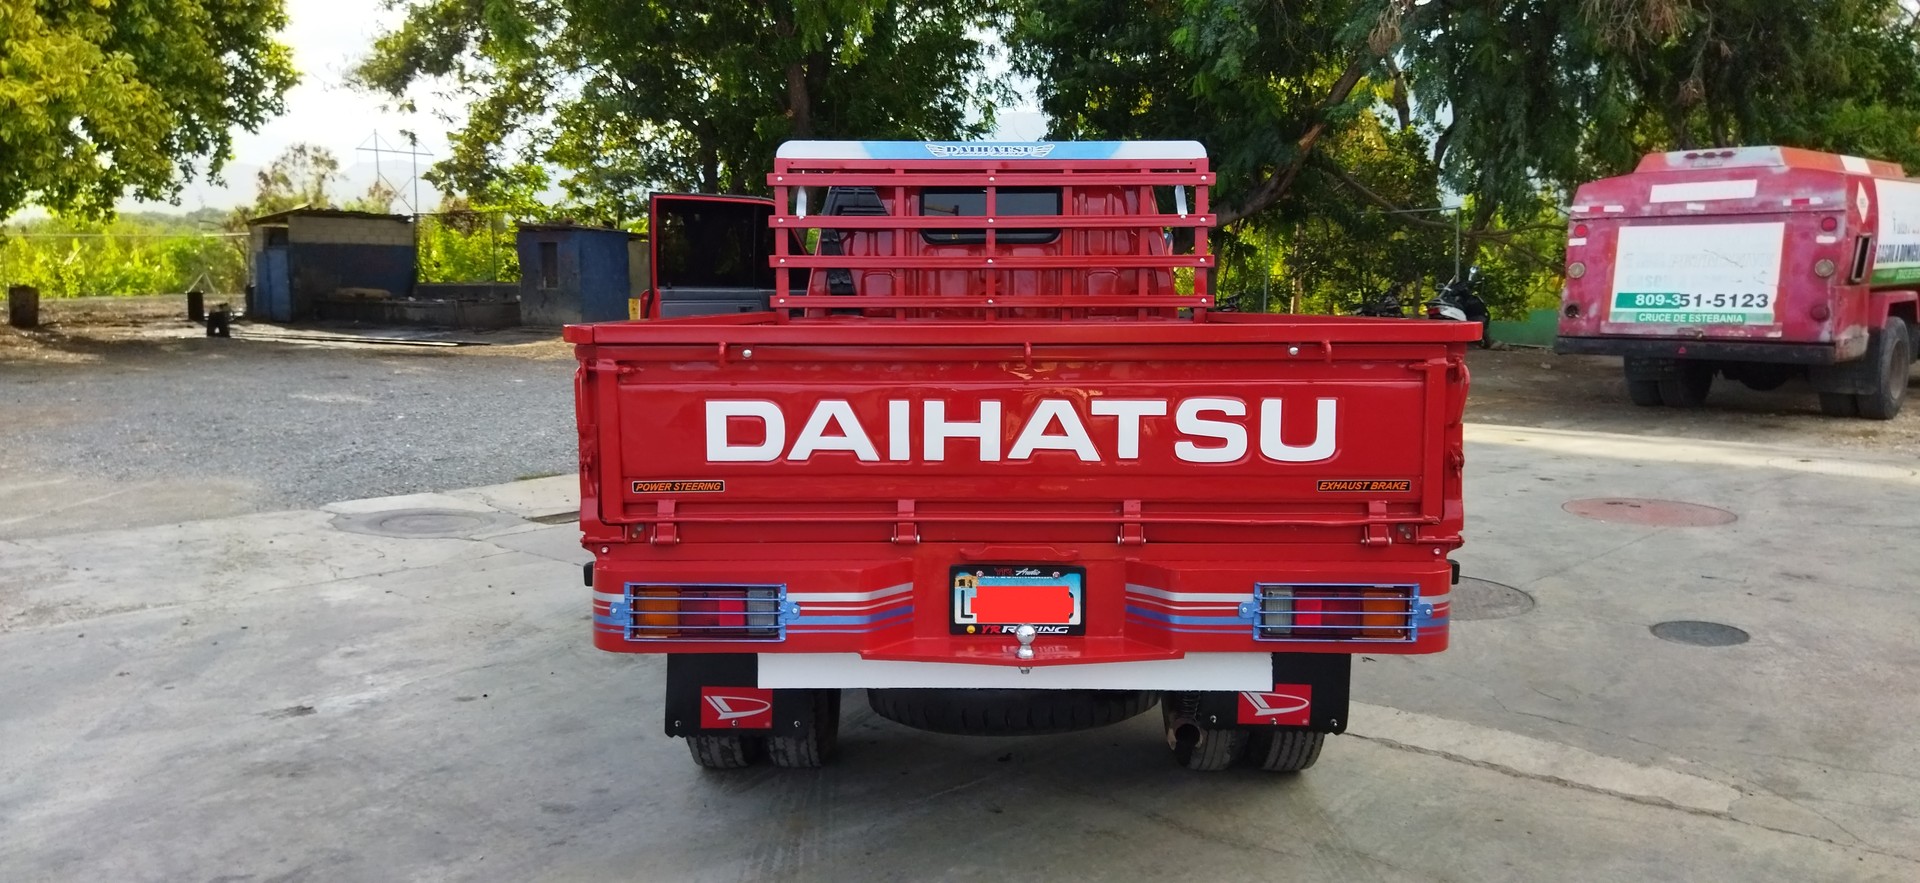 camiones y vehiculos pesados - Camión Daihatsu 1997